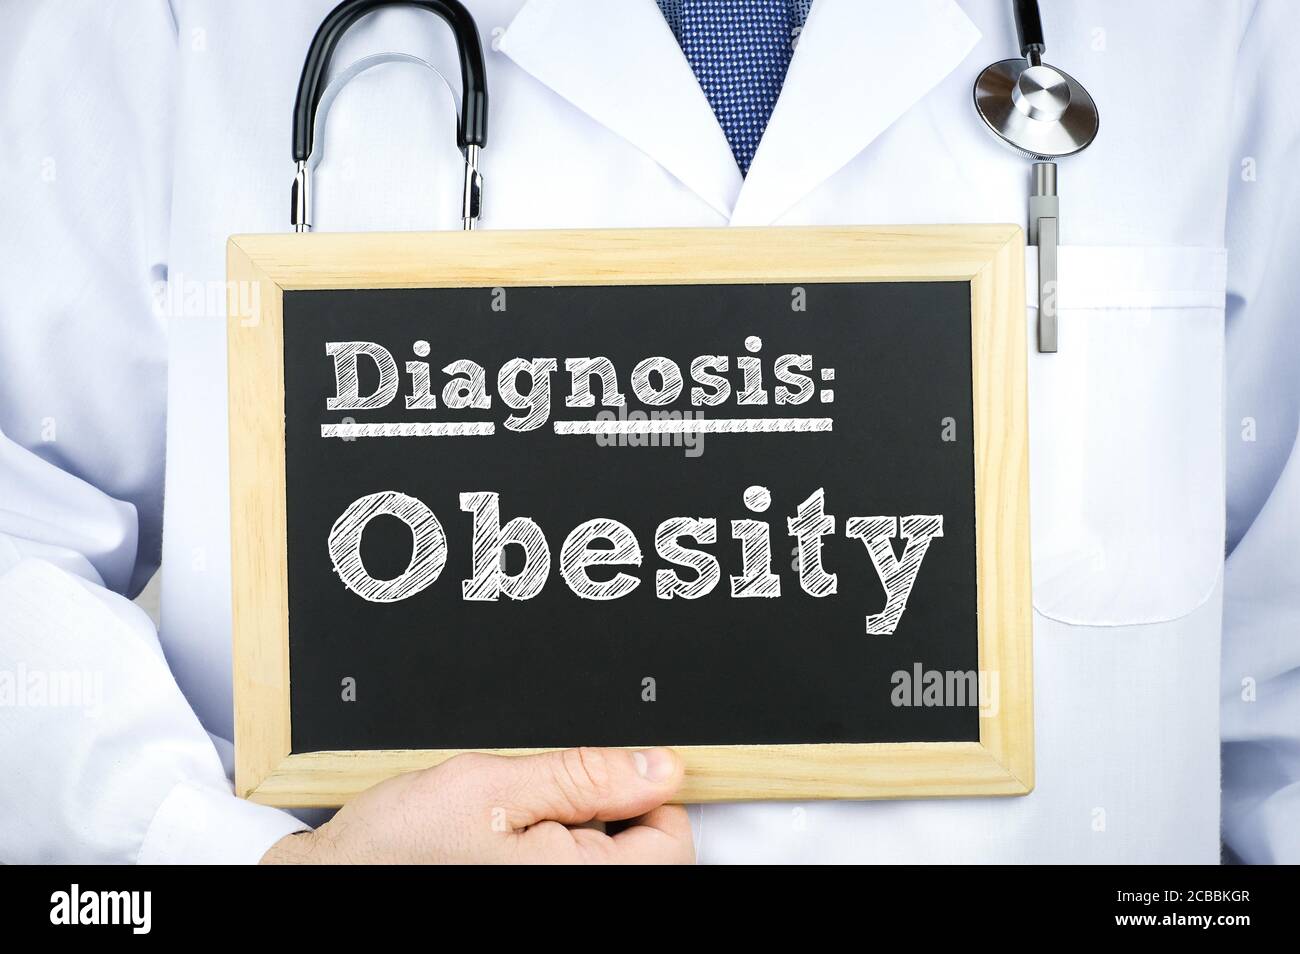 Diagnosis Obesity Stock Photo